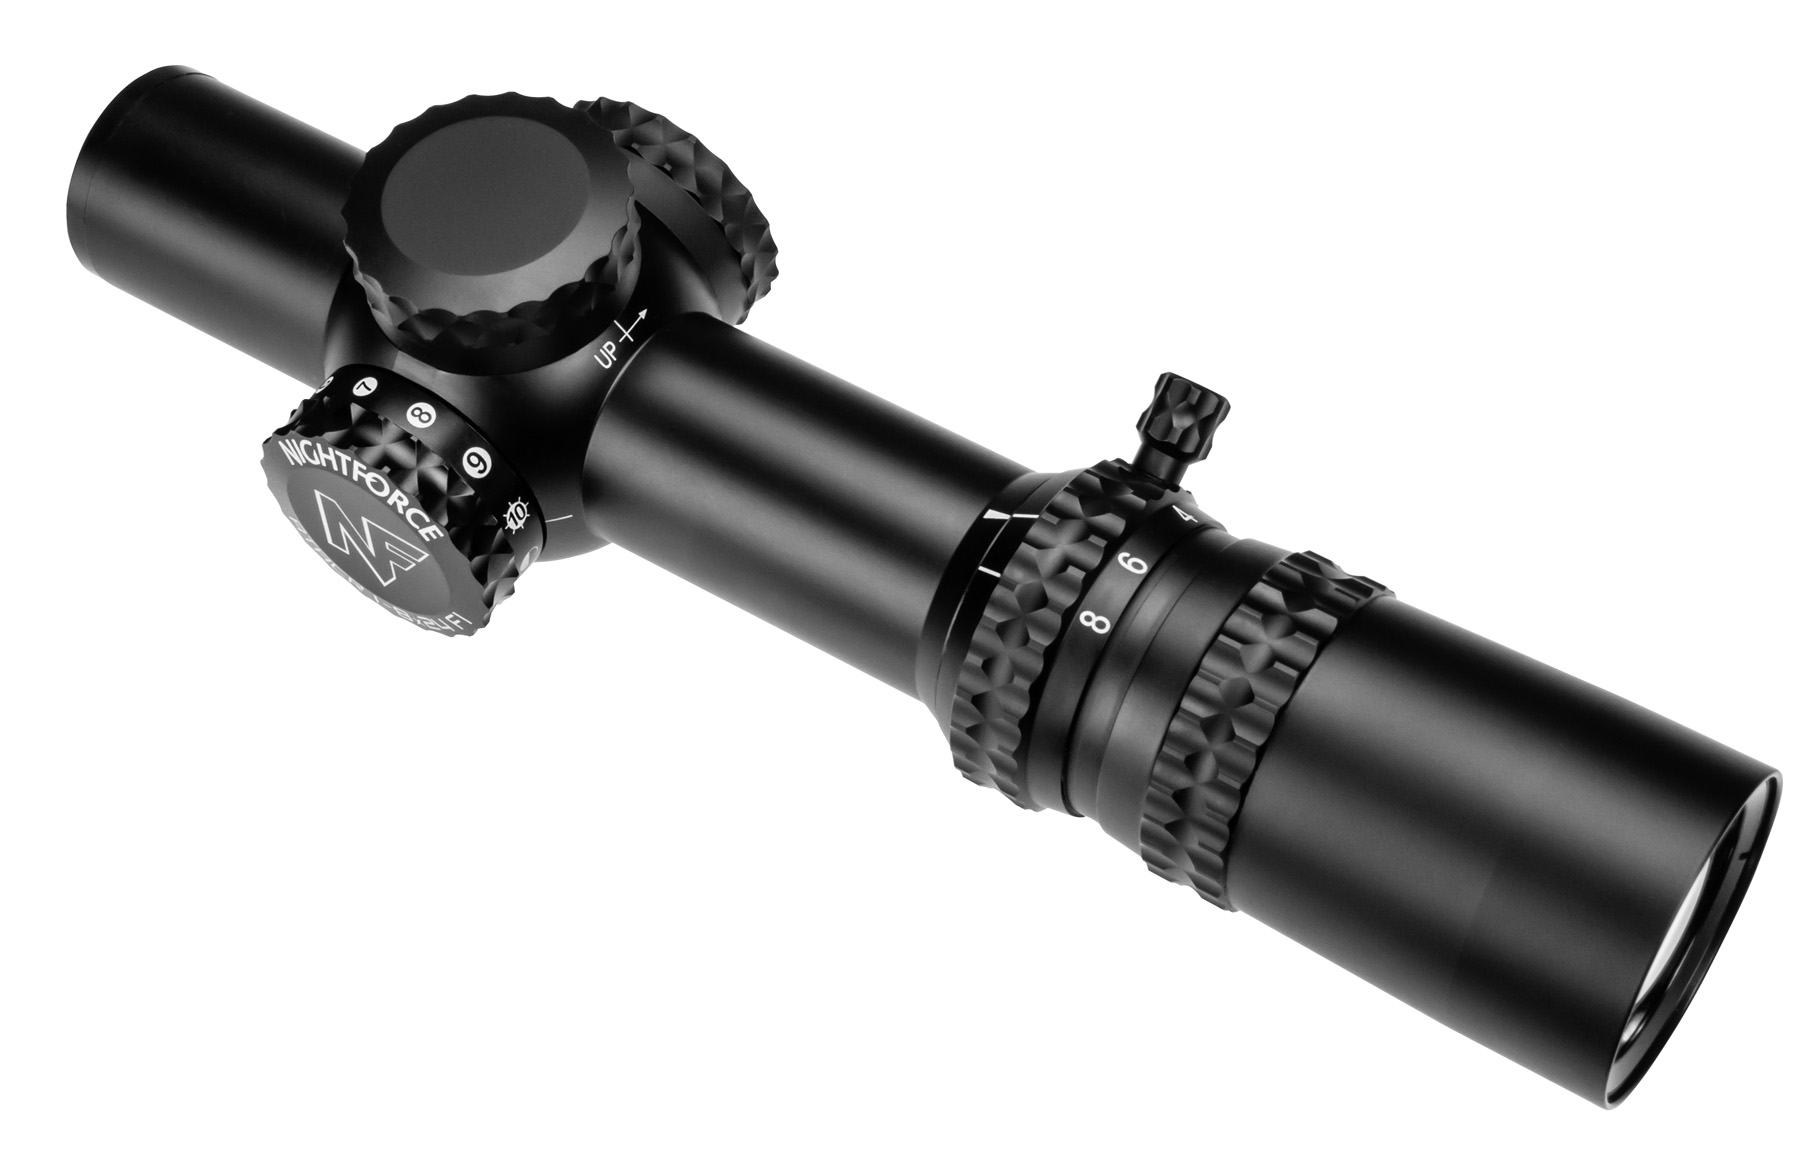 Nightforce ATACR 1-8x Riflescope